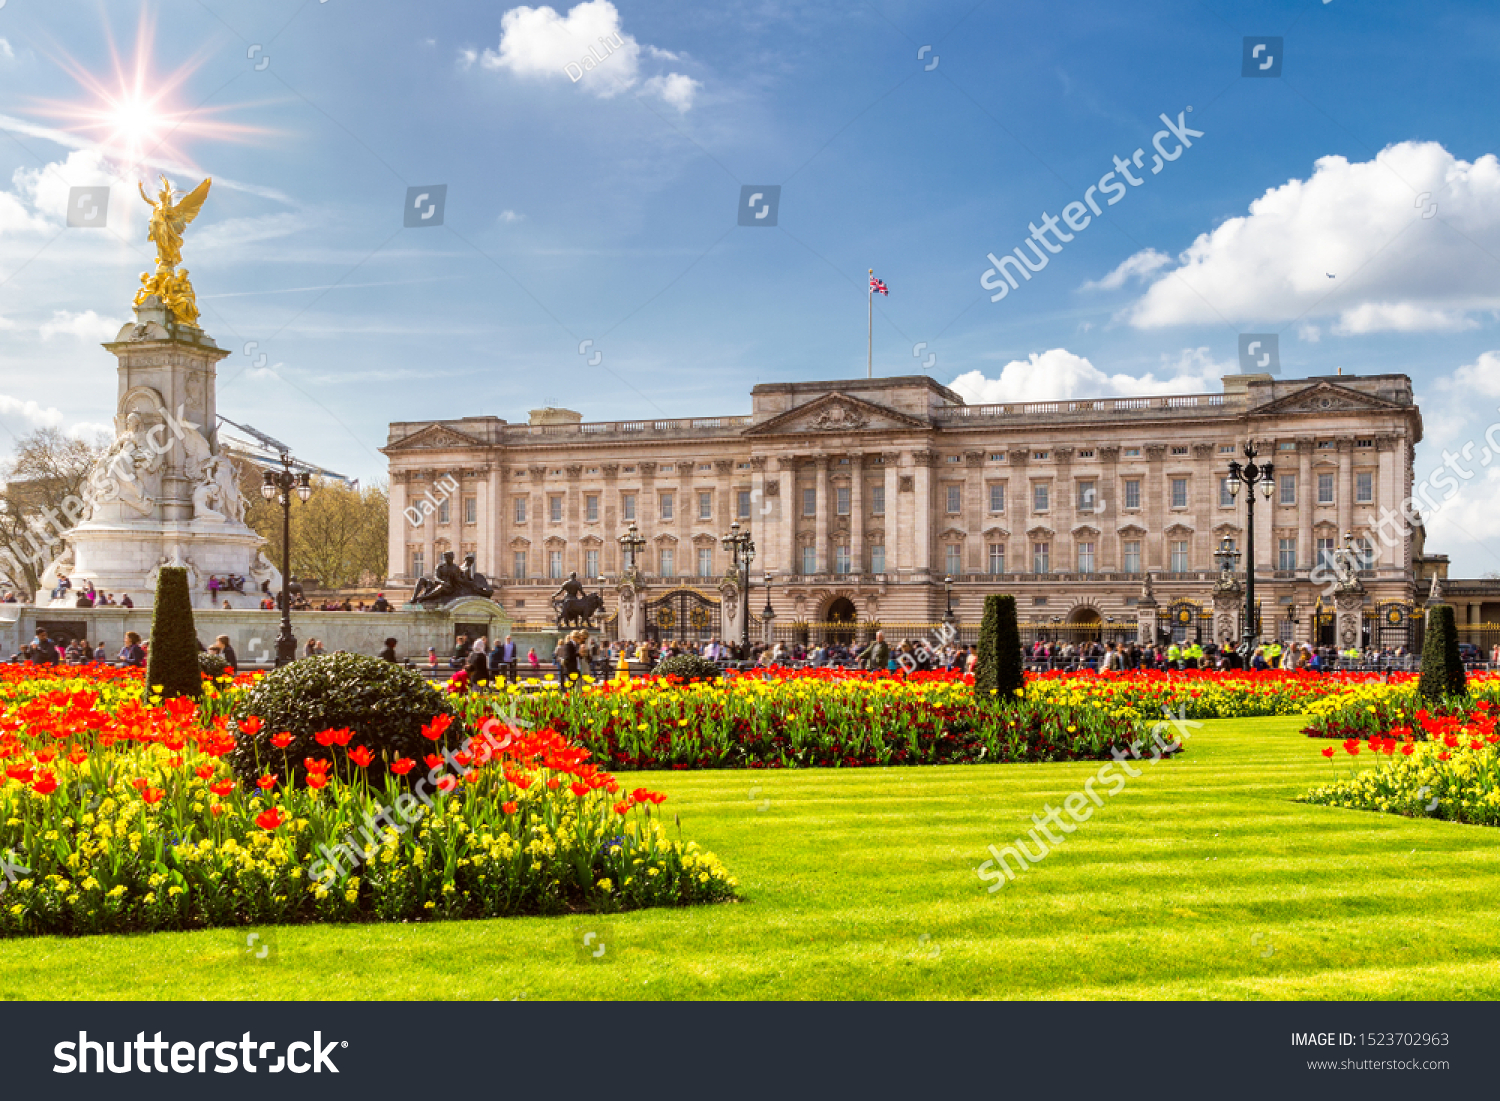 Buckingham Palace in London, United Kingdom. #1523702963